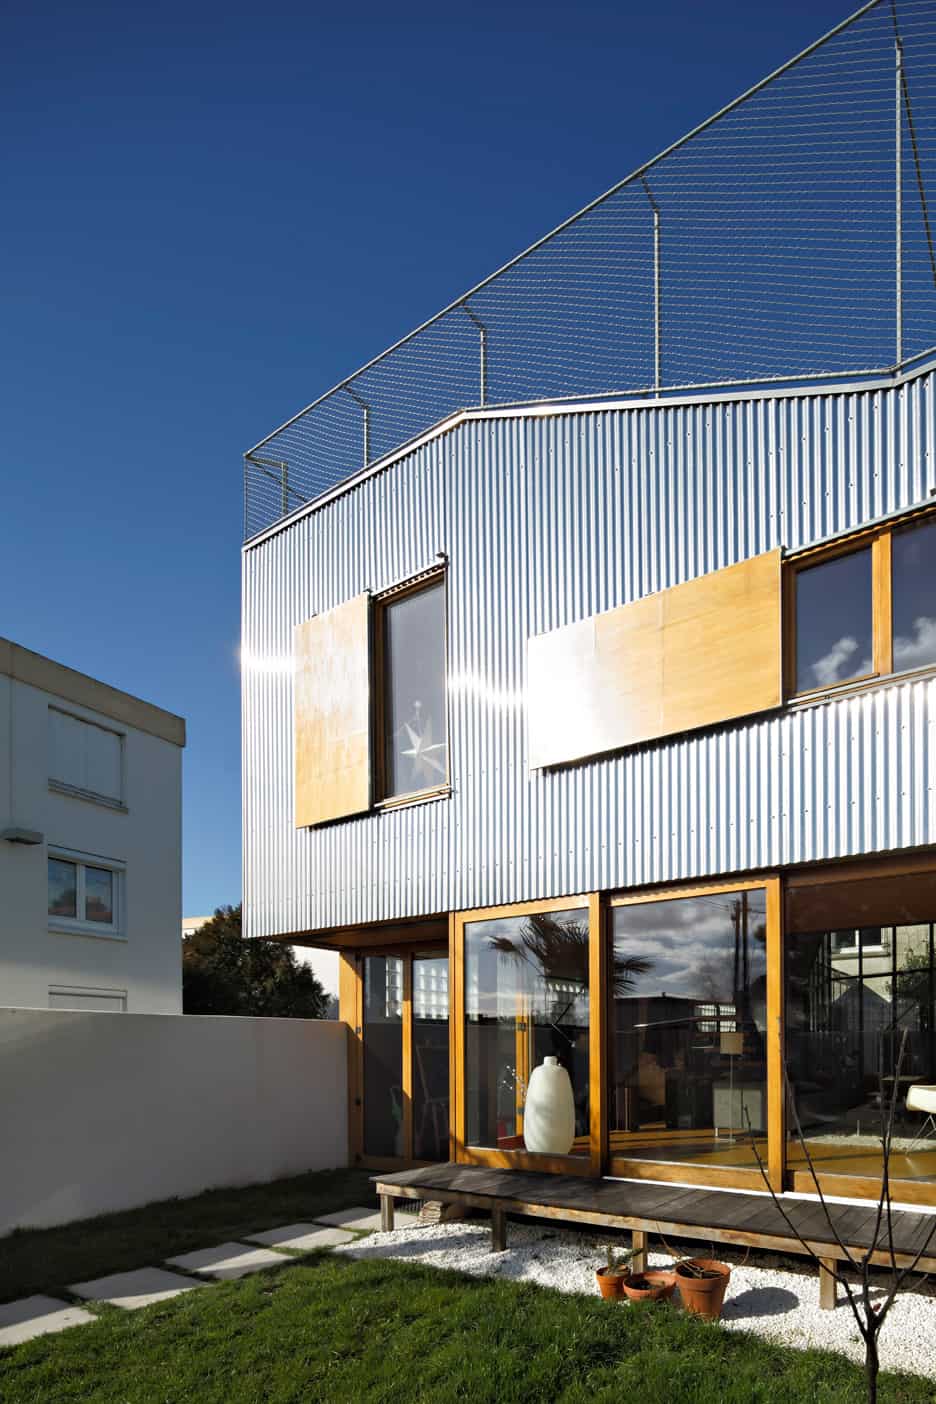 20 corrugated aluminium facade 1930s home extension